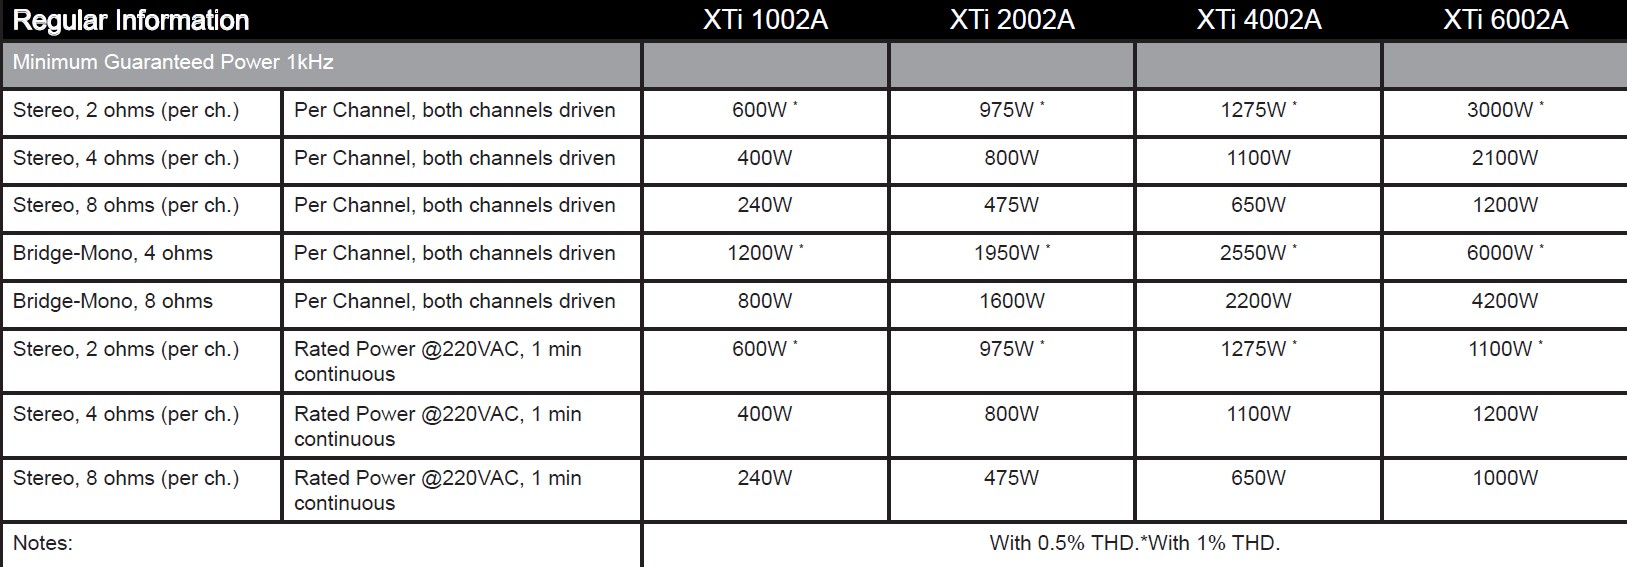 Cục đẩy công suất Crown XTi 6002A